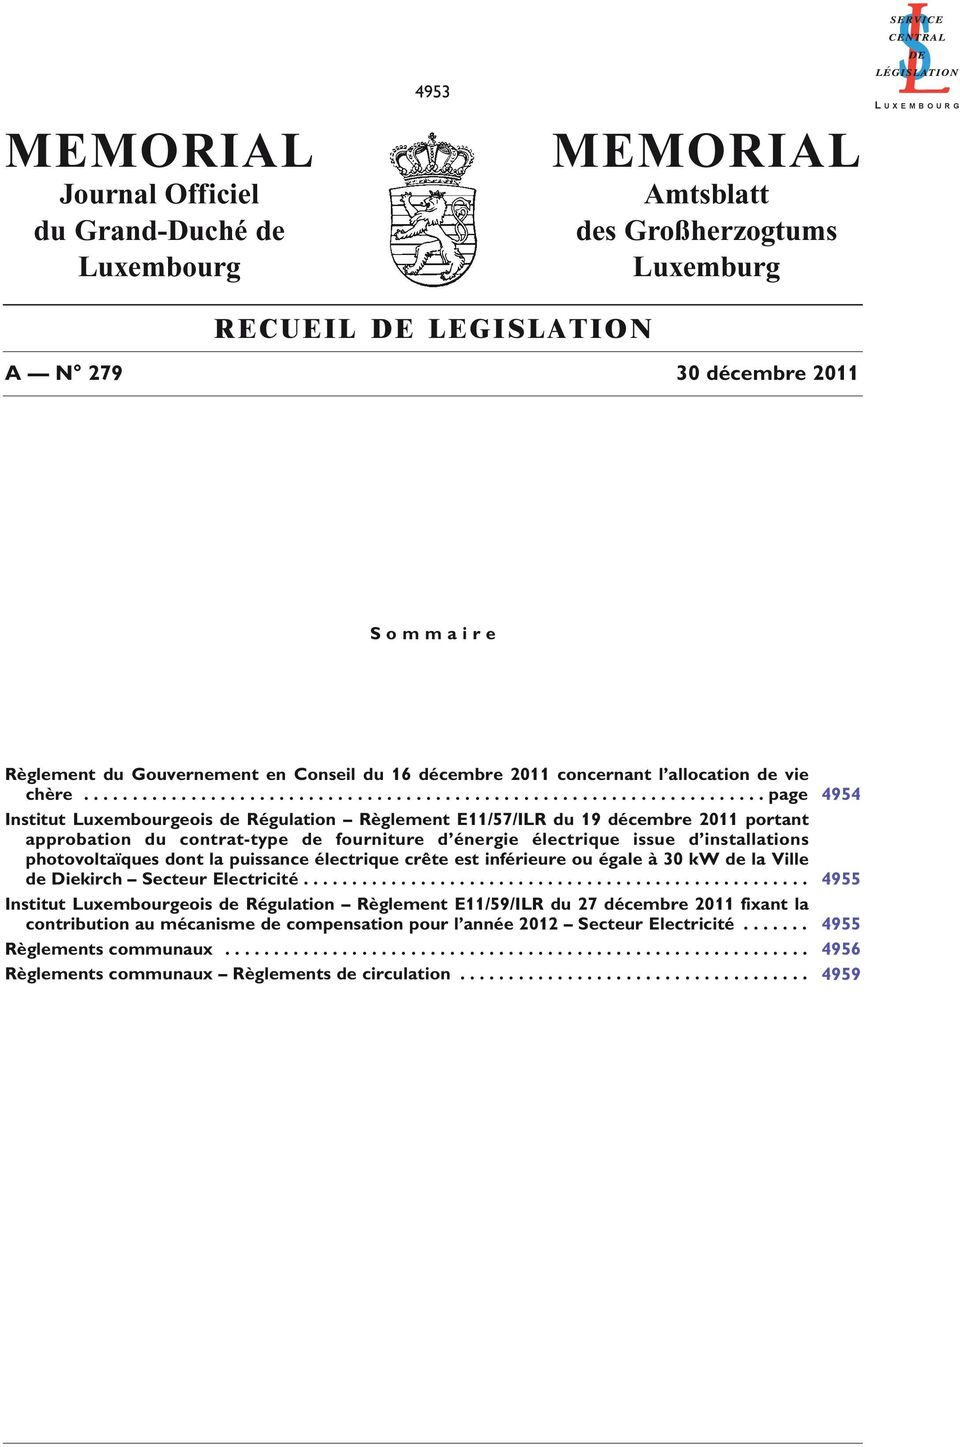 ..................................................................... page 4954 Institut Luxembourgeois de Régulation Règlement E11/57/ILR du 19 décembre 2011 portant approbation du contrat-type de